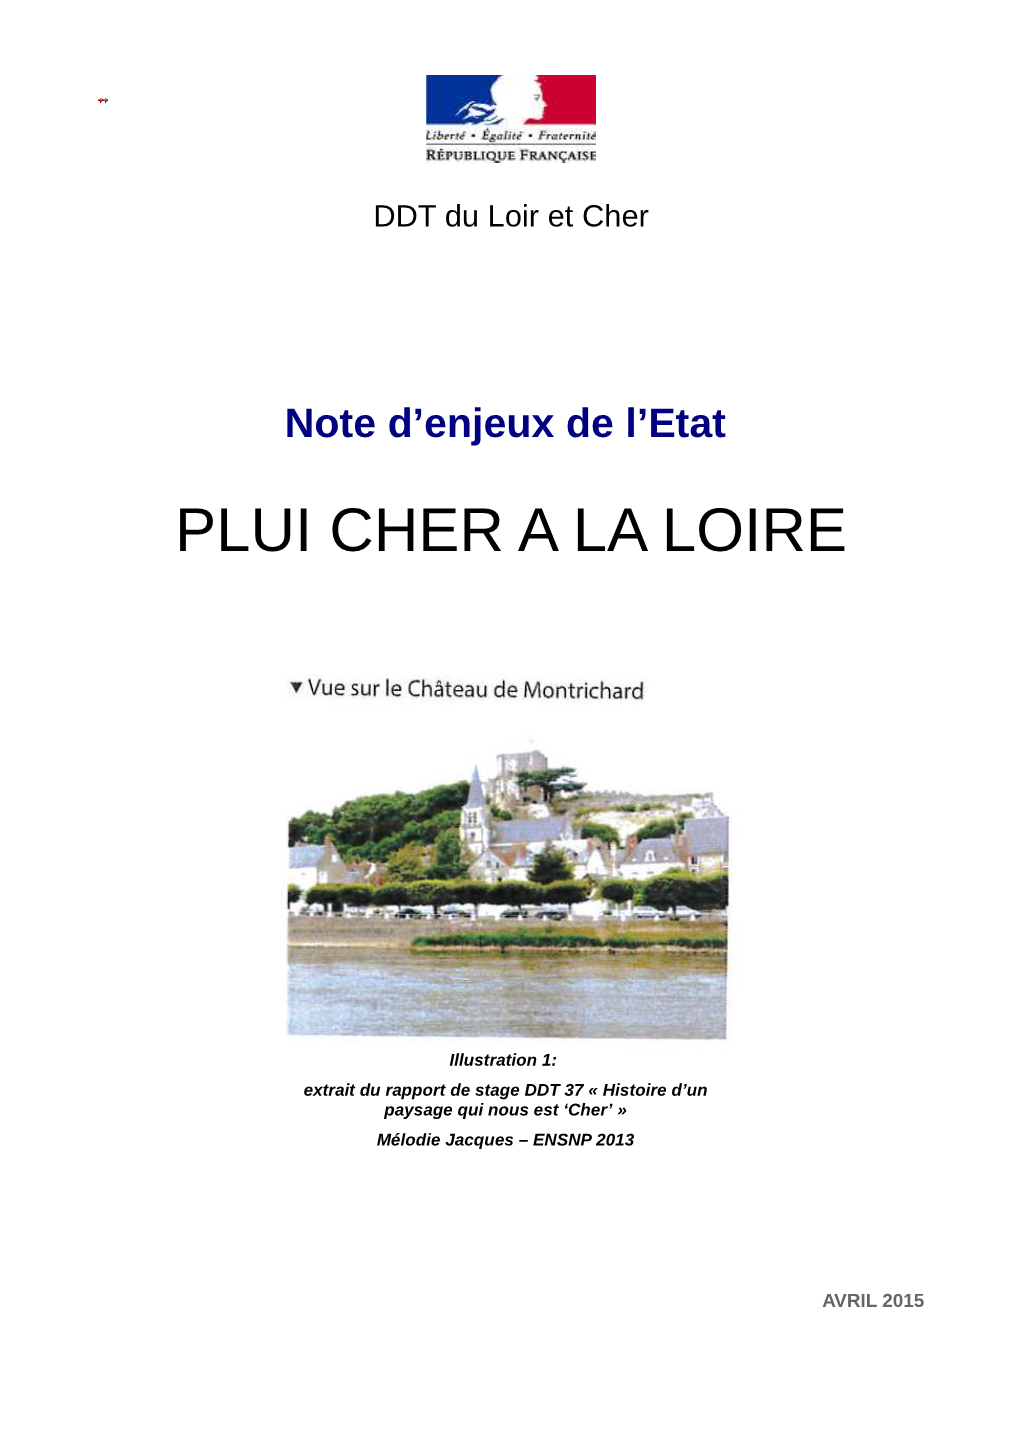 Plui Cher a La Loire